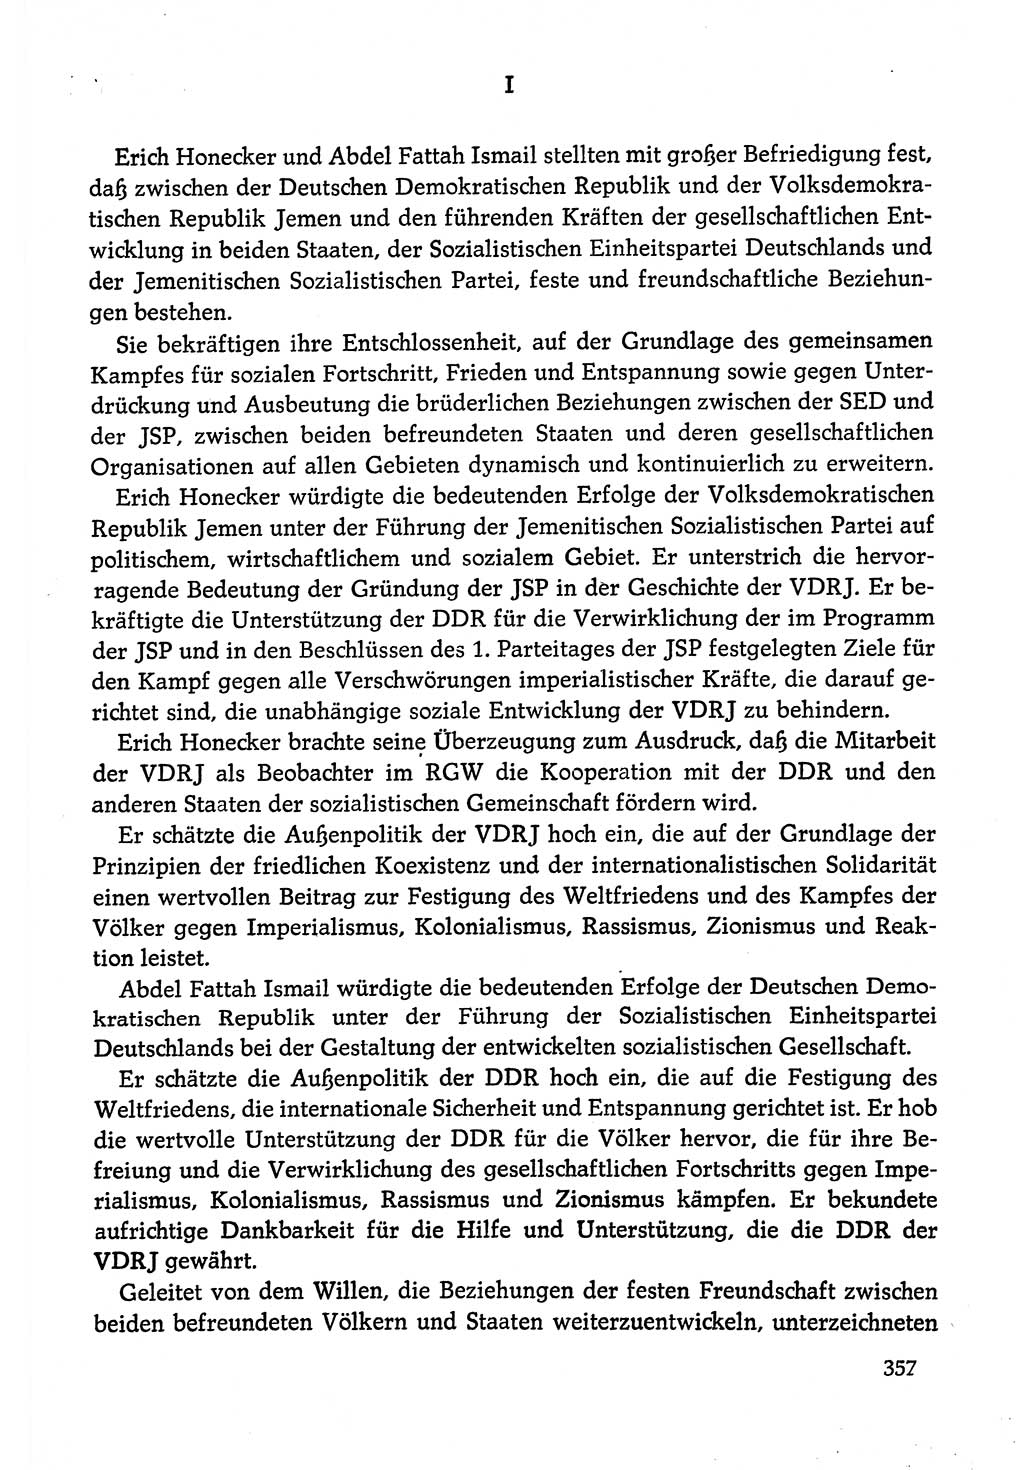 Dokumente der Sozialistischen Einheitspartei Deutschlands (SED) [Deutsche Demokratische Republik (DDR)] 1978-1979, Seite 357 (Dok. SED DDR 1978-1979, S. 357)